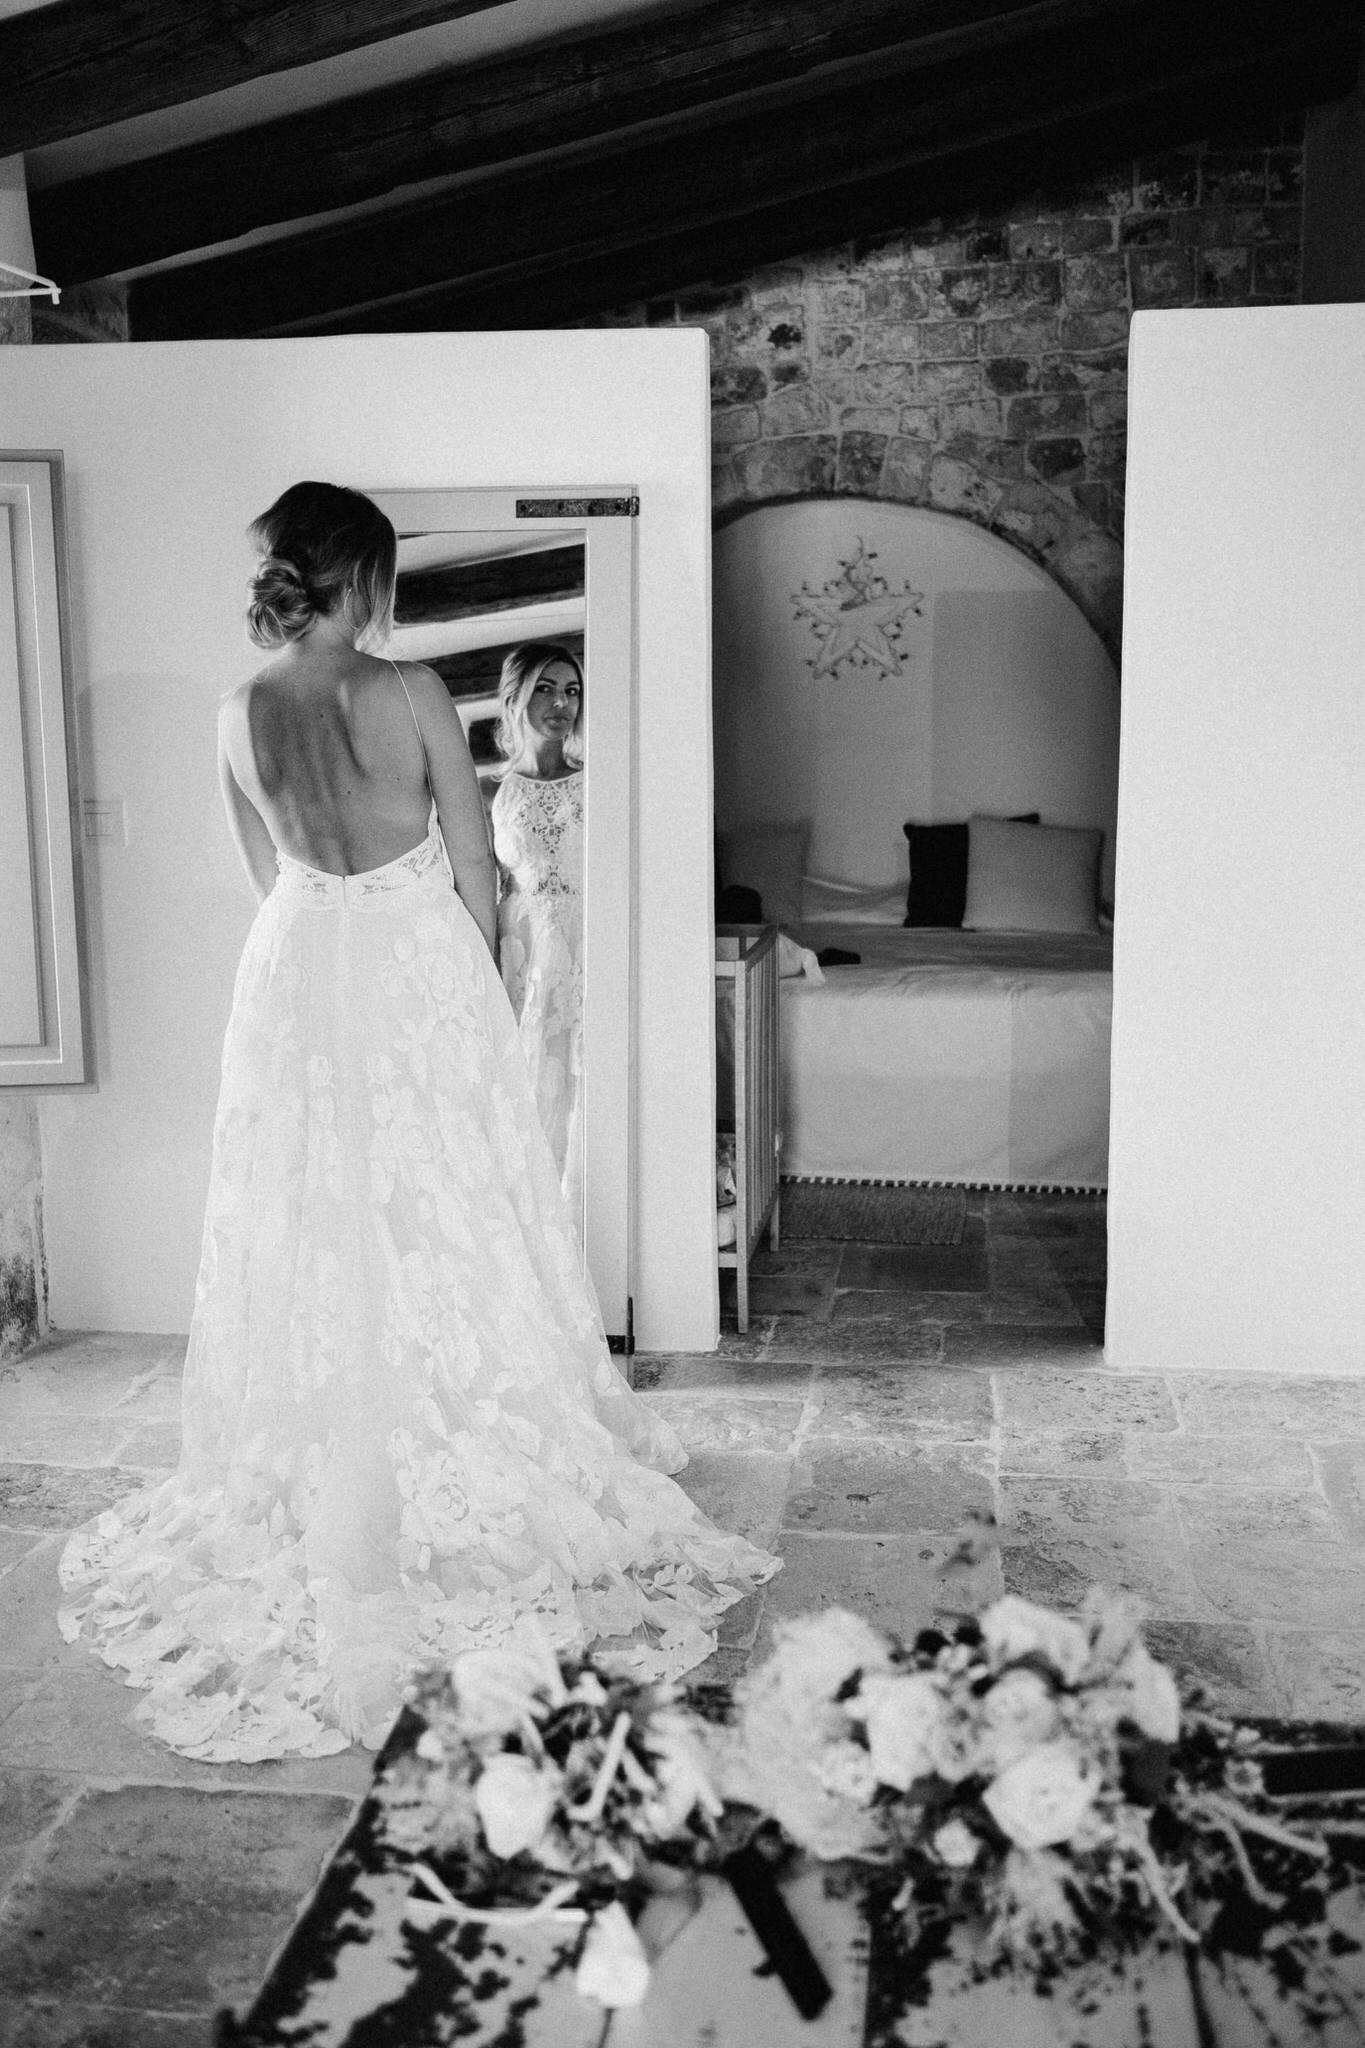 Getting ready - Wedding in Apulia, Italy - 35mm